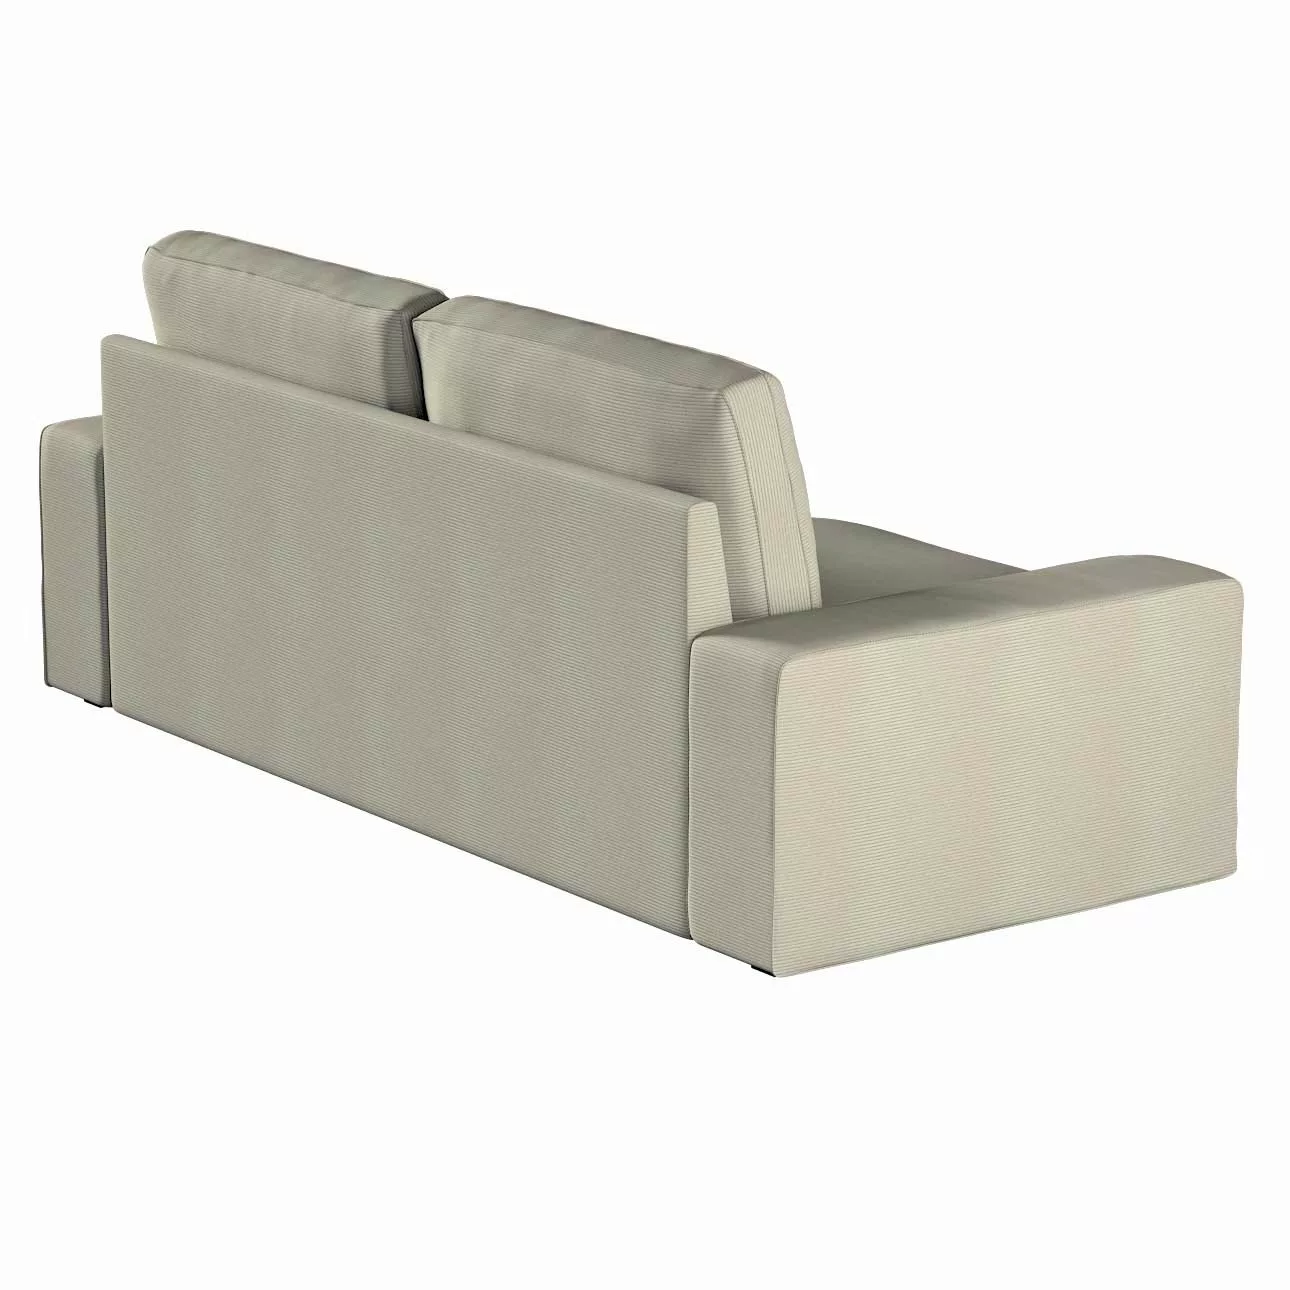 Bezug für Kivik 3-Sitzer Sofa, grau, Bezug für Sofa Kivik 3-Sitzer, Manches günstig online kaufen